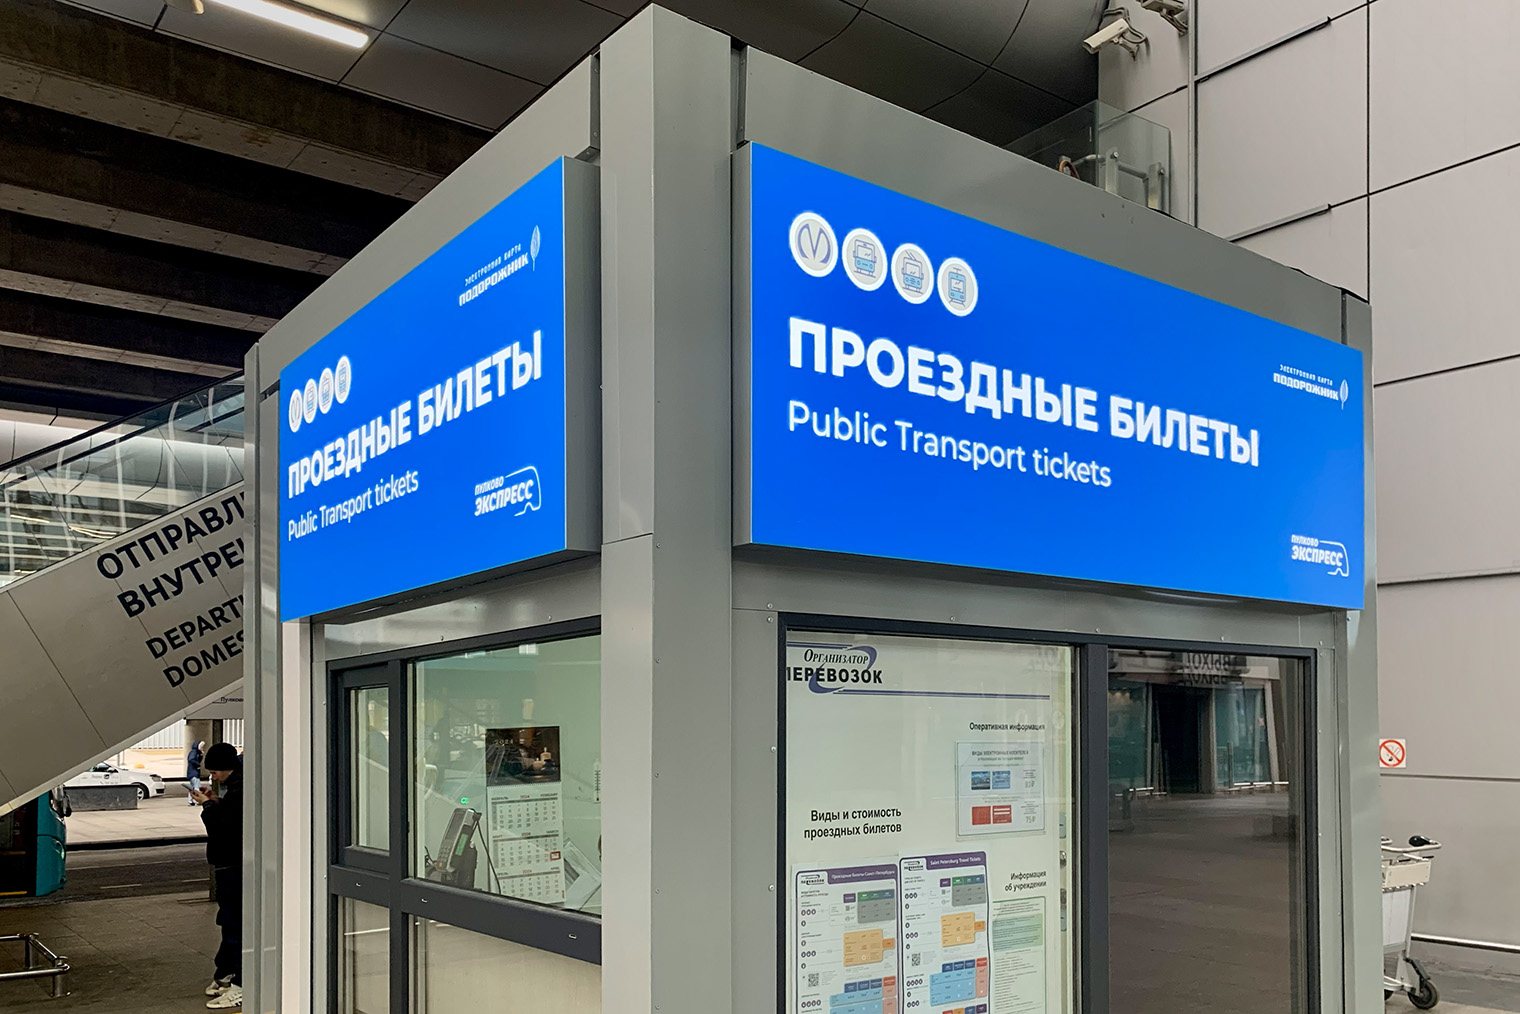 Так выглядит киоск в Пулкове, где продают проездные билеты на общественный транспорт Петербурга